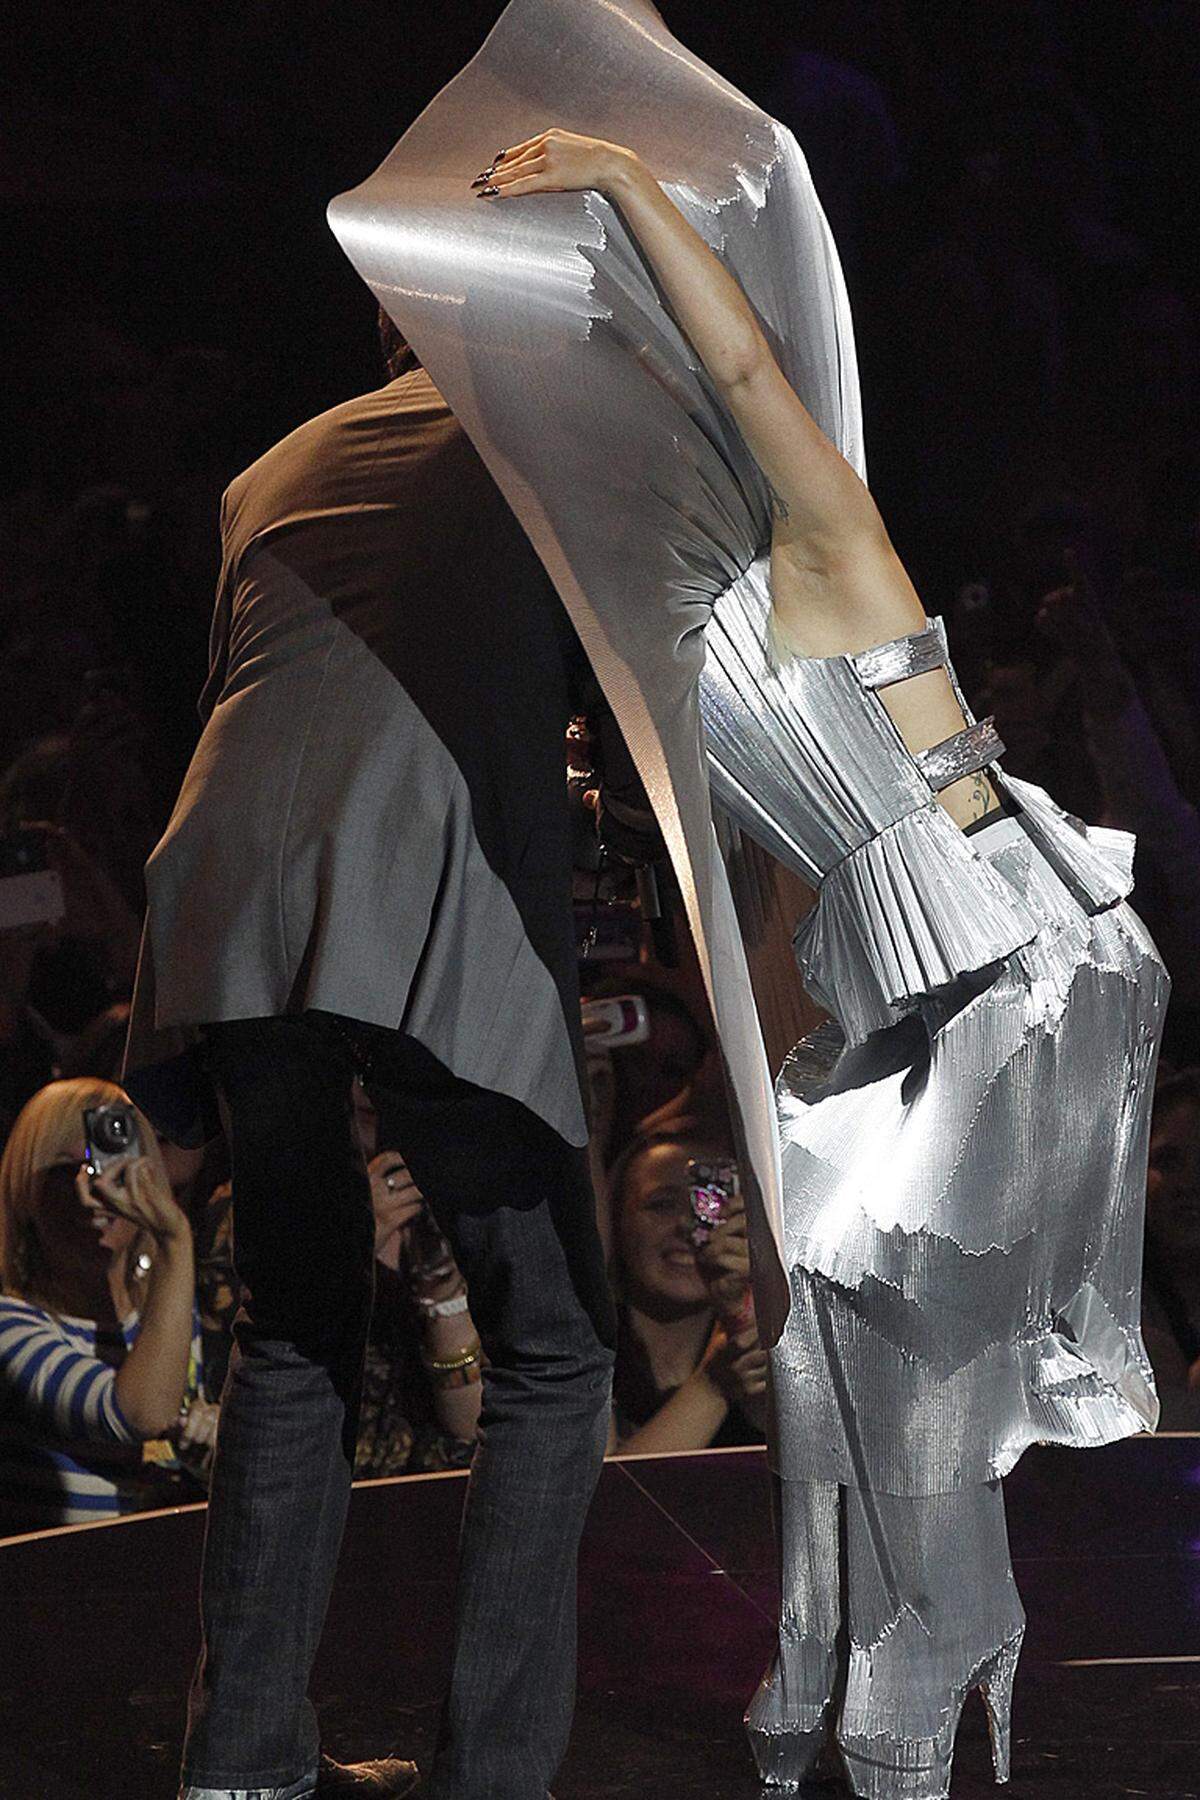 David Hasselhoff (im Bild links) hatte angesichts des aufwendigen Kostüms Gagas bei der Überreichung eines der Preise so seine Schwierigkeiten.